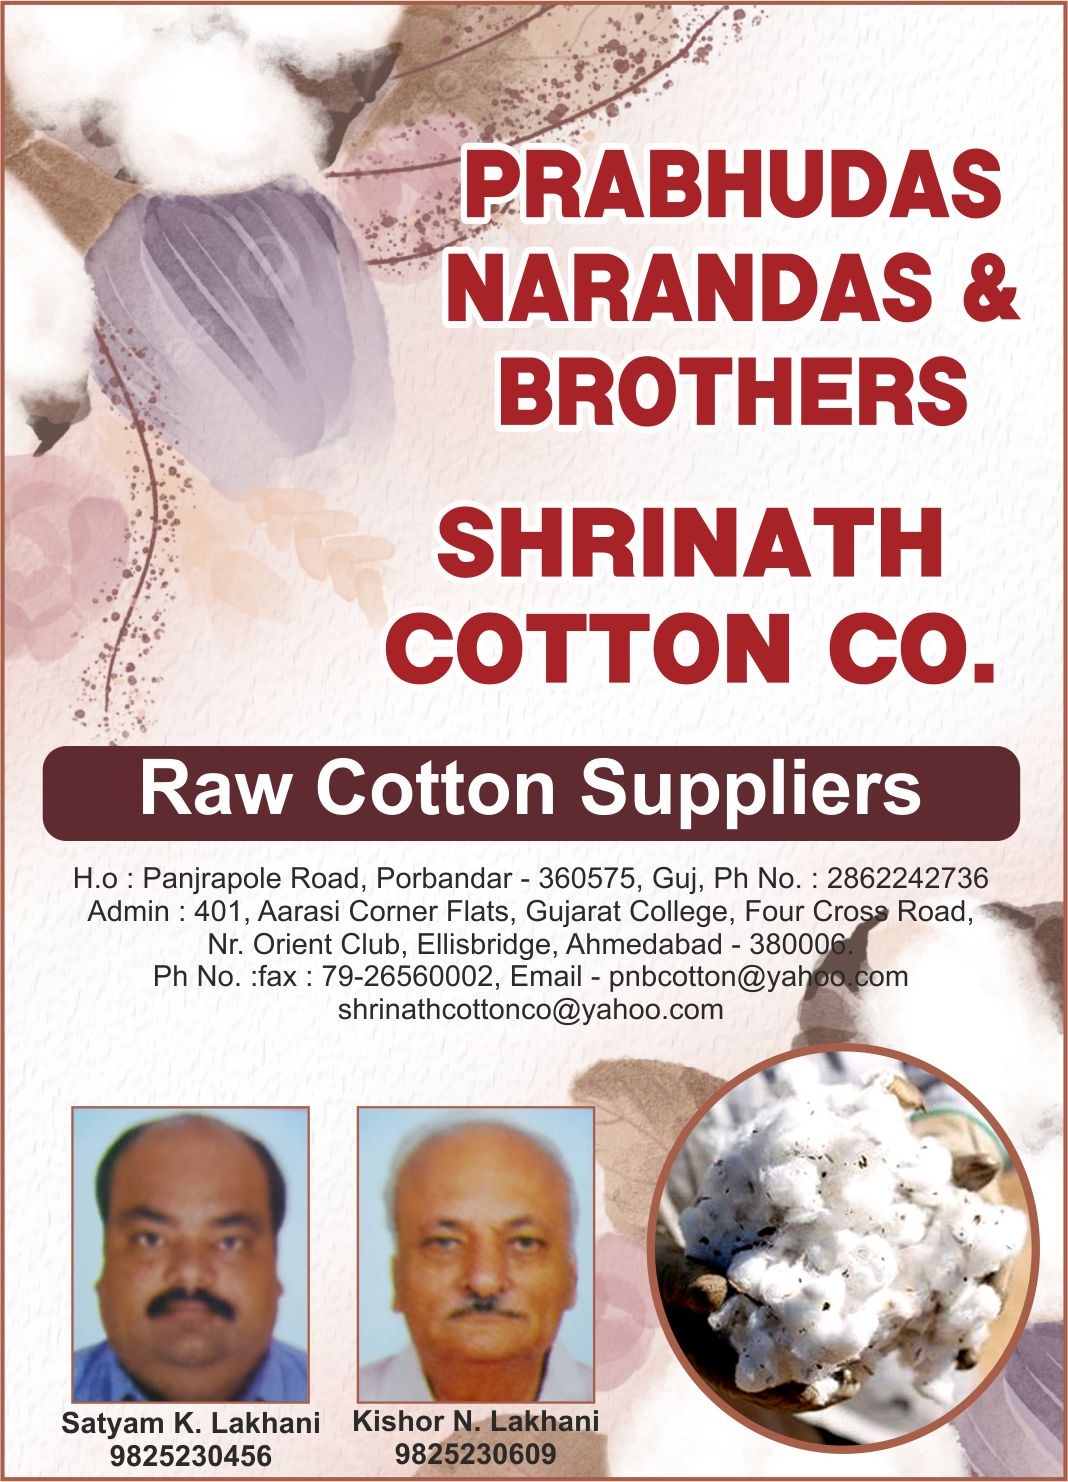 Prabhudas Narayandas & Brothers